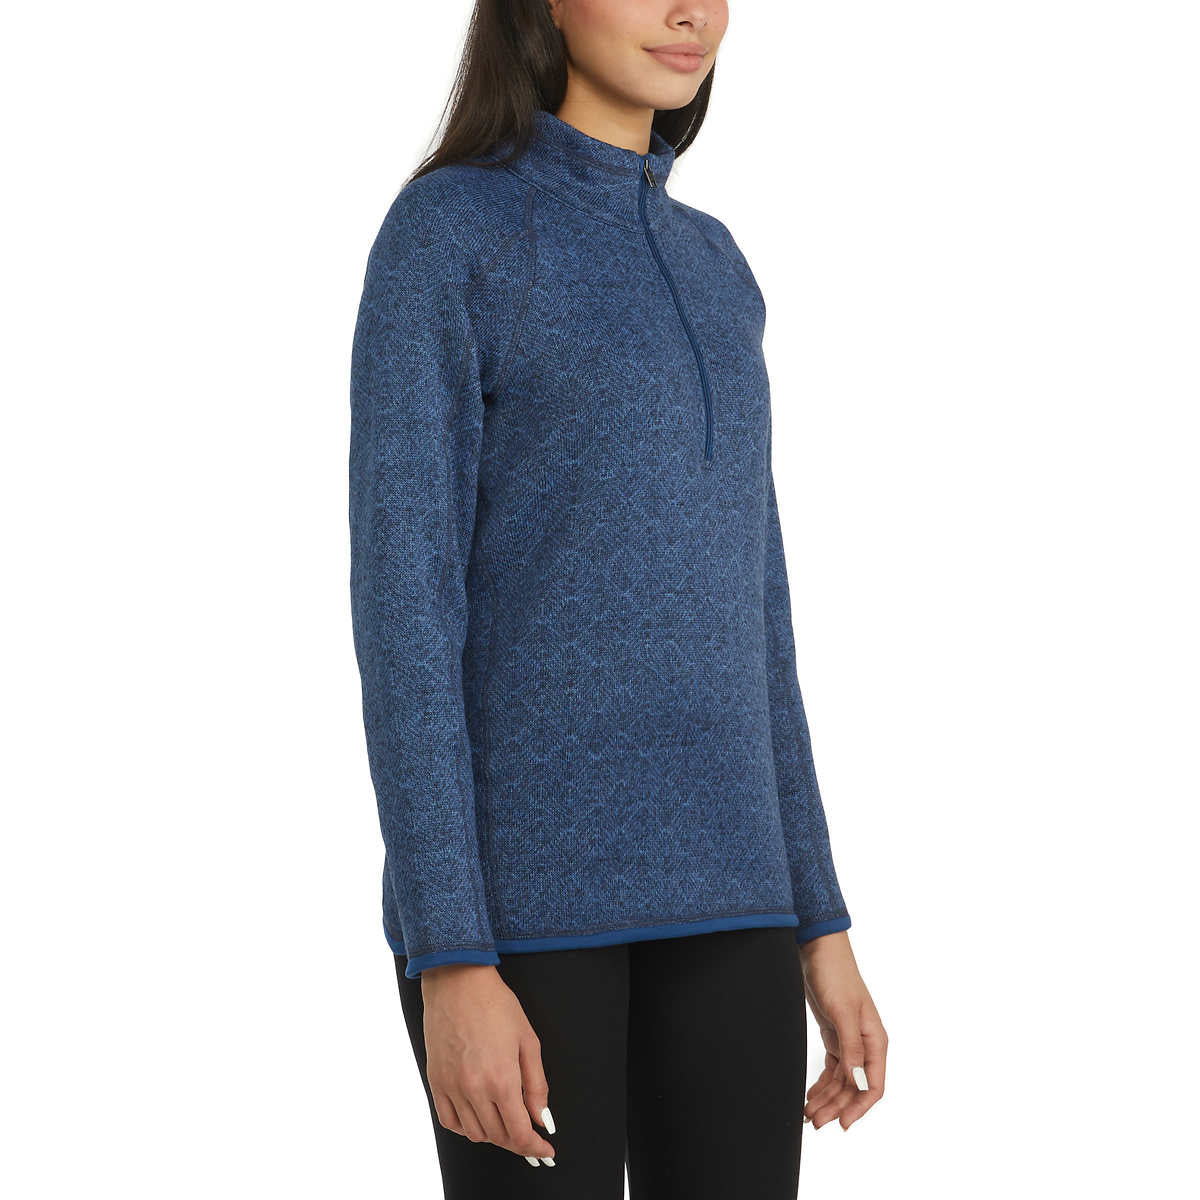 Storm Pack Women's Quarter Zip Comfort Fit Cozy  Fleece Sweater